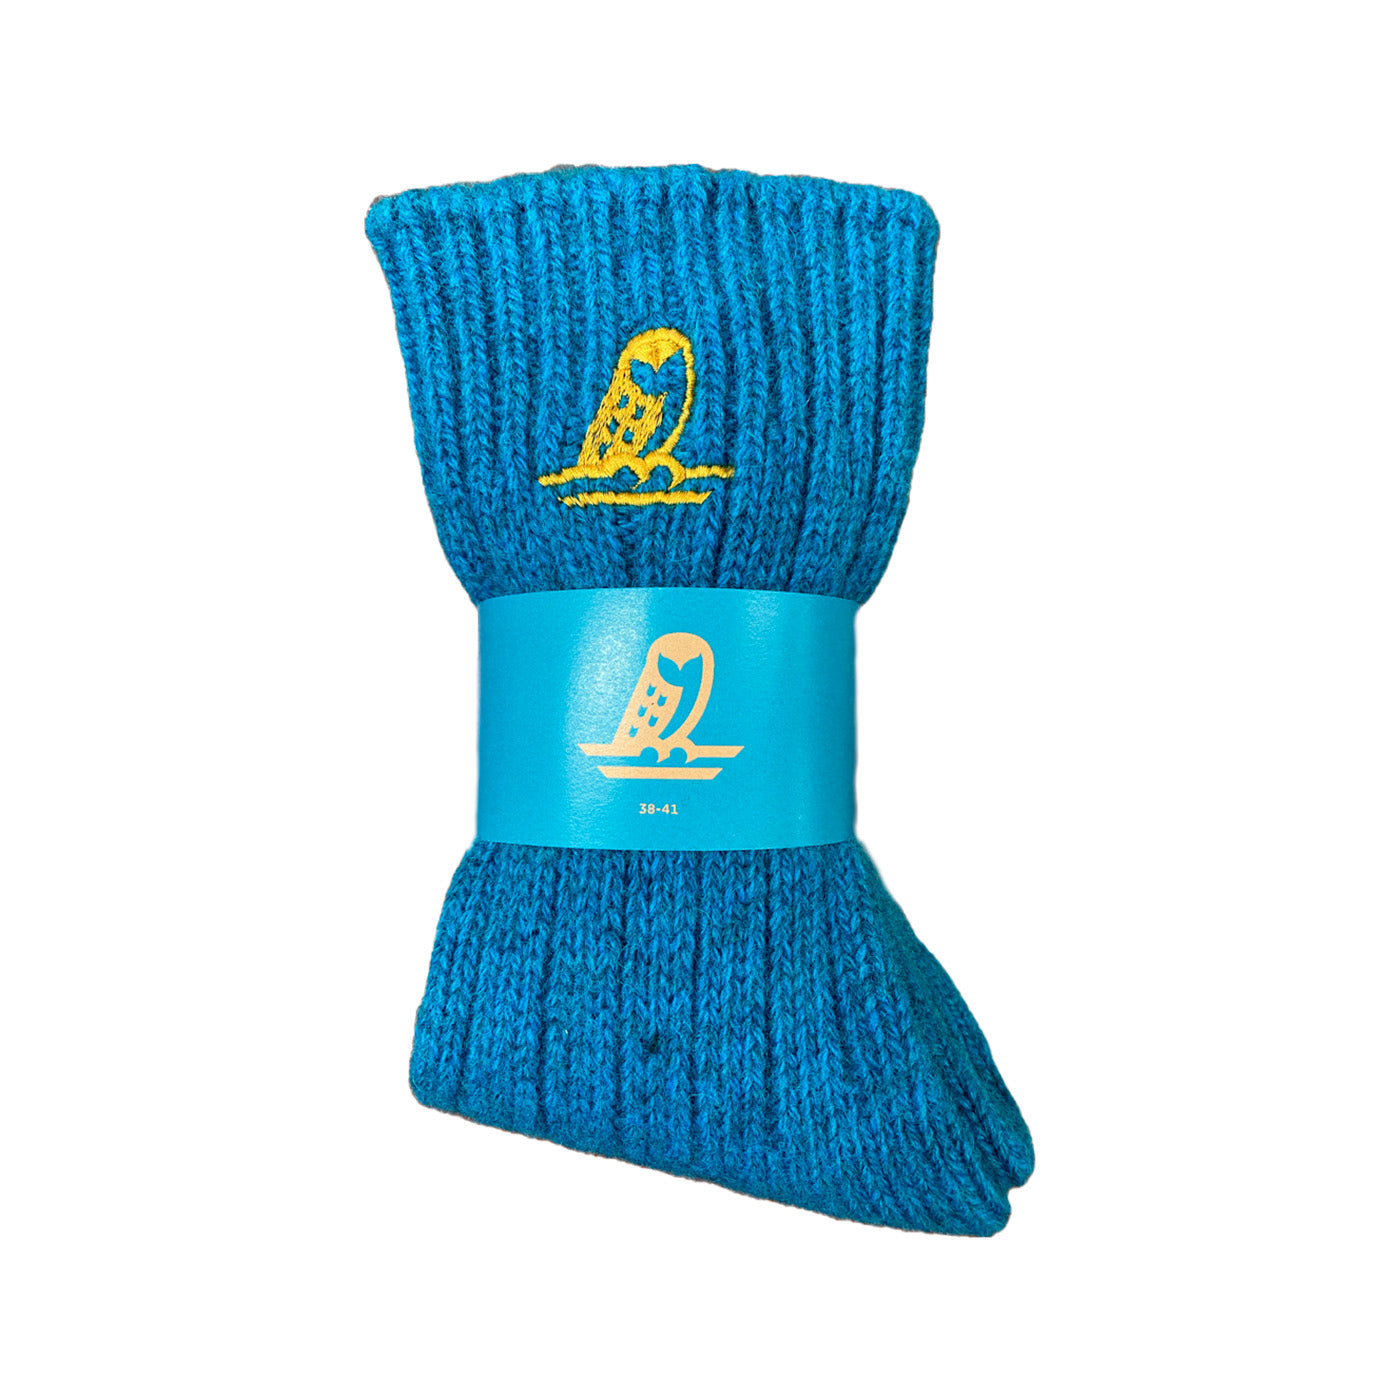 Helmi Wool Socks, Turquoise